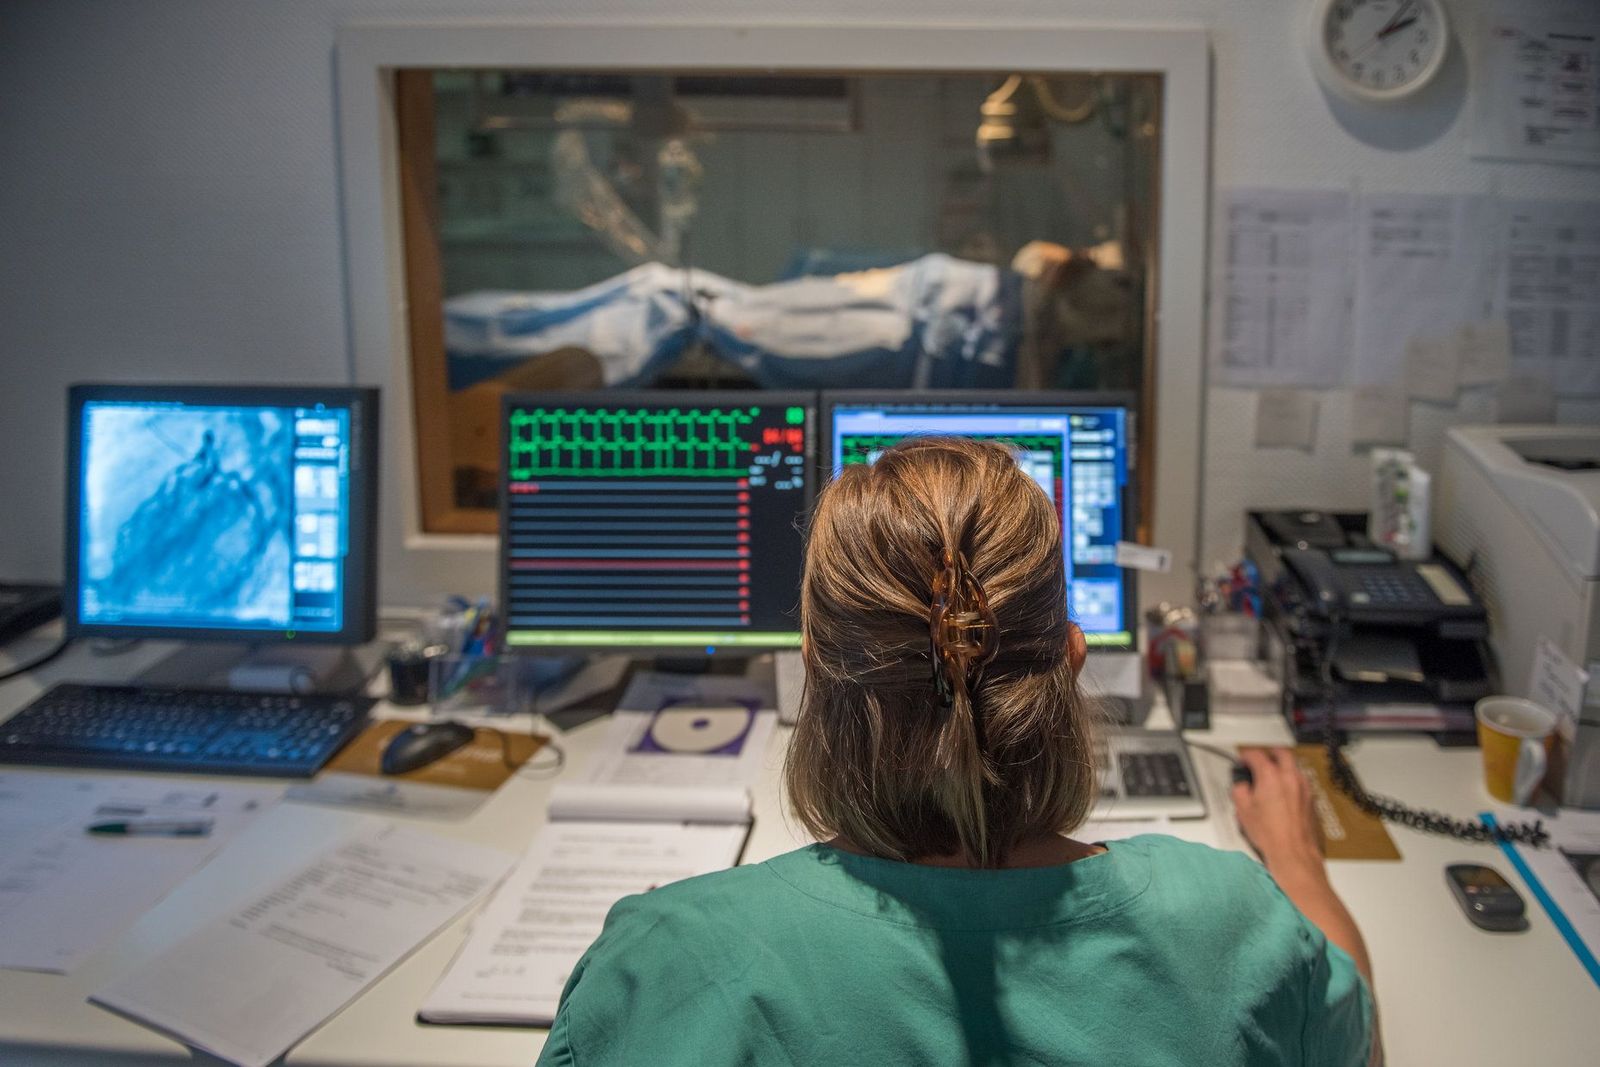 Untersuchung im Linksherzkatheterlabor: Eine Pflegekraft betrachtet während der minimal-invasiven Untersuchung das Ergebnis auf dem Bildschirm